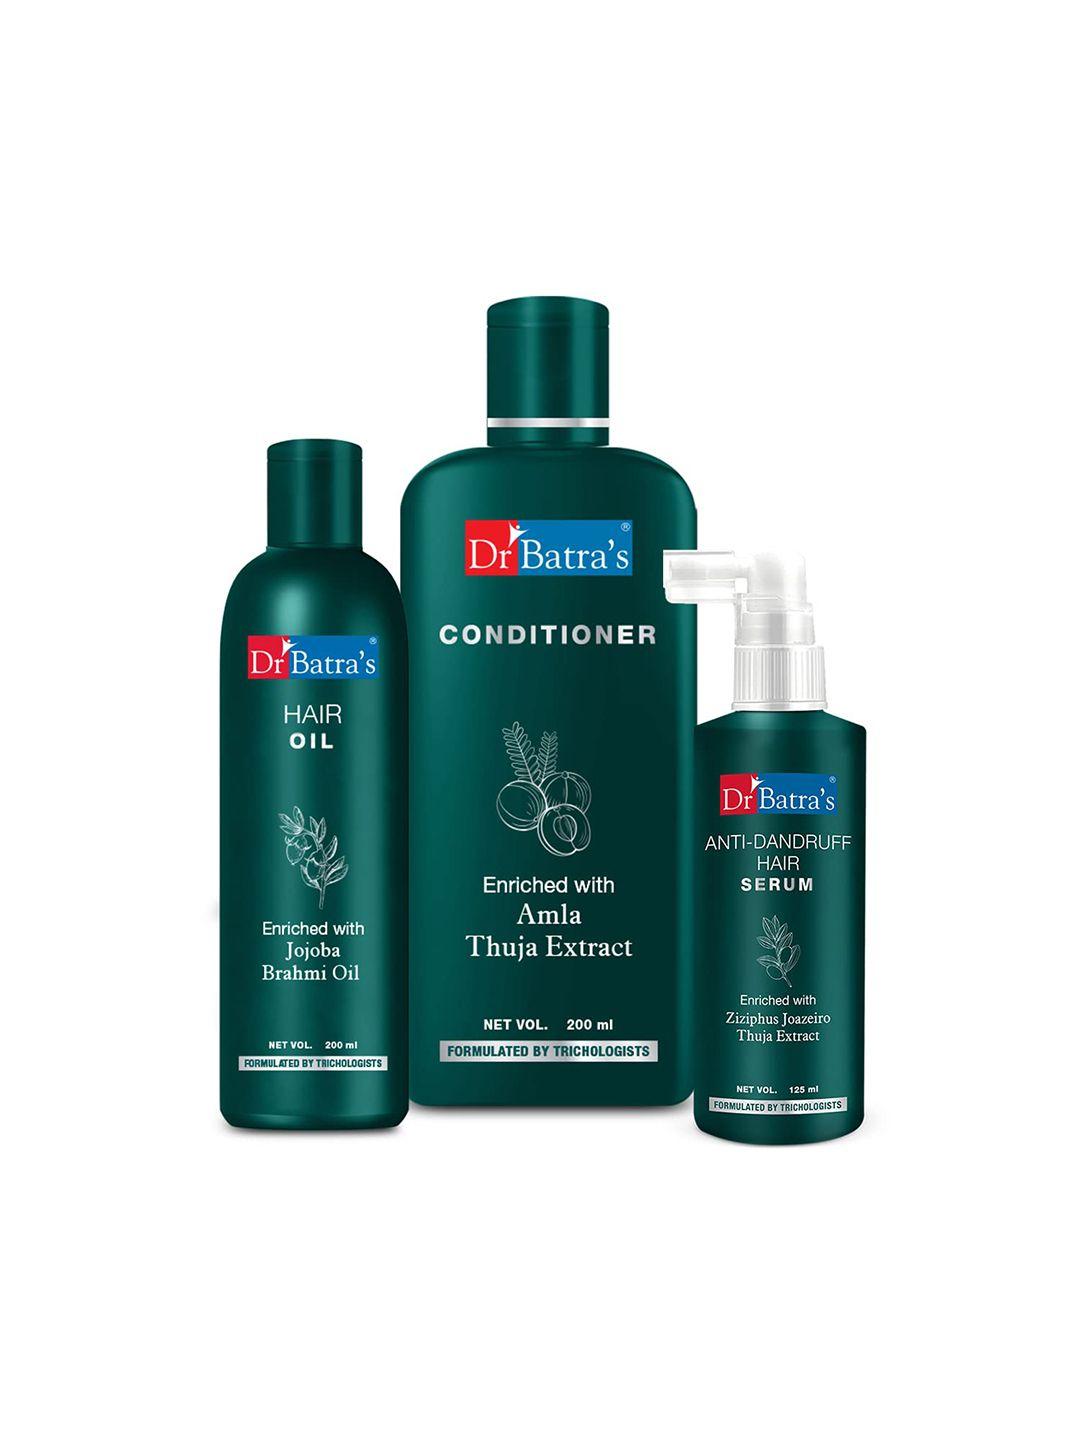 dr. batras anti dandruff hair serum 125ml + conditioner 200ml + hair oil 200ml